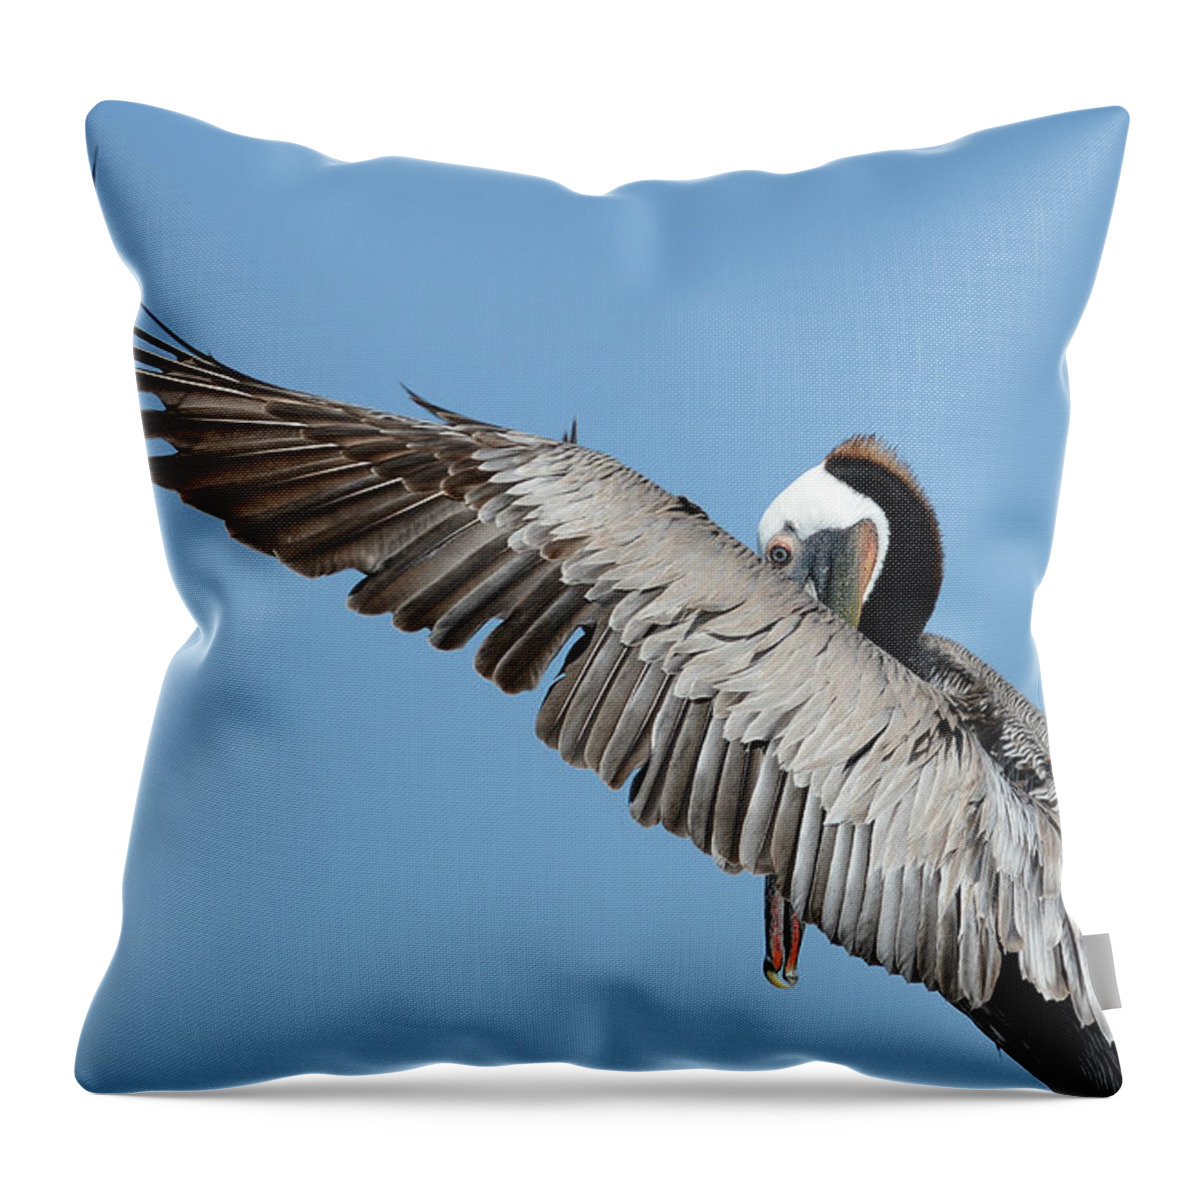 Brown Pelican Throw Pillow featuring the photograph Peeking Through #3 by Fraida Gutovich